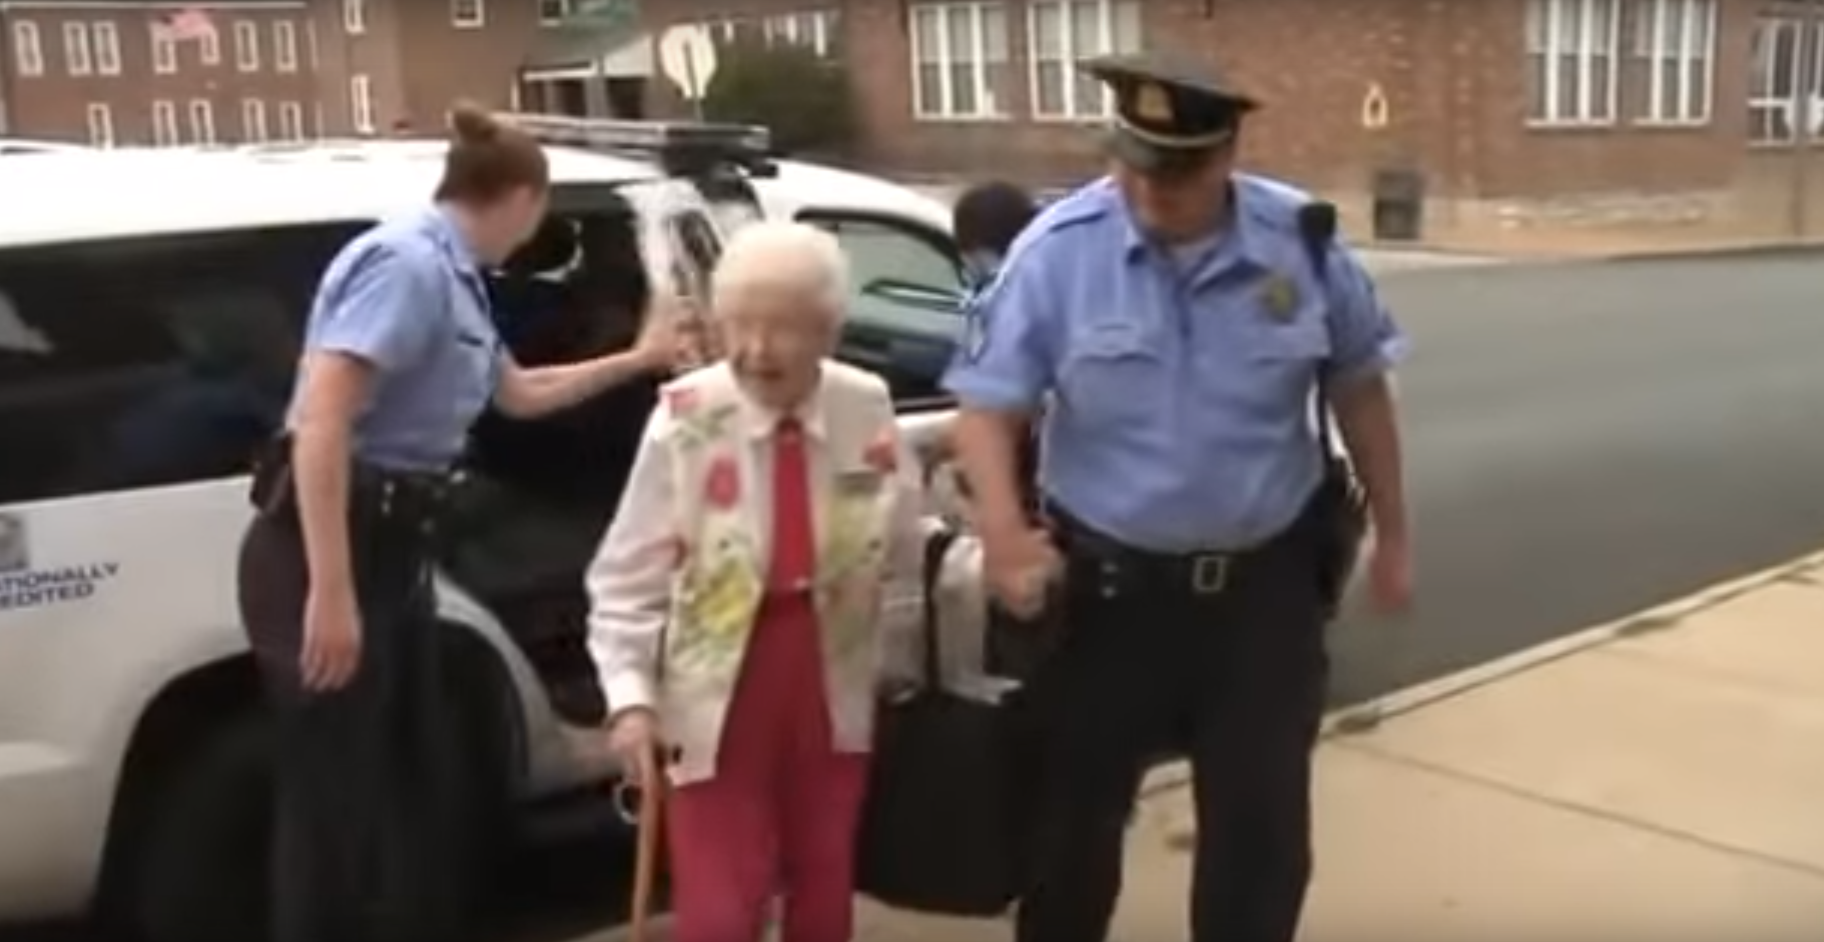 La dame a été escortée par la police menottes au poignet.